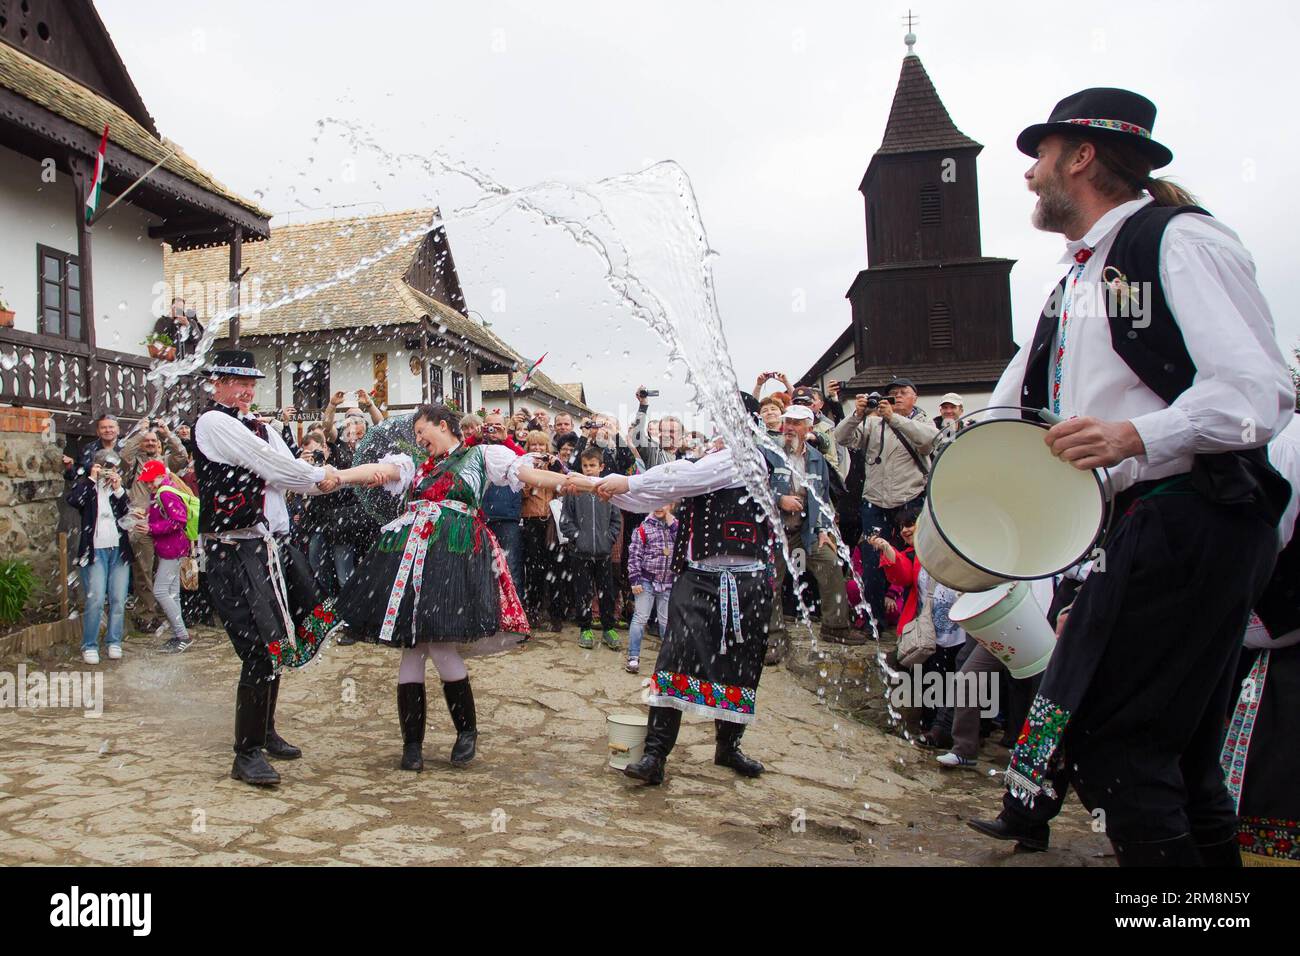 (140421) -- HOLLOKO, 21. April 2014 (Xinhua) -- einheimische Männer spritzen Wasser auf ein Mädchen als Teil der traditionellen Osterfeierlichkeiten in Holloko, einem Dorf in Nordungarn, 21. April 2014. Die Einheimischen aus Holloko, das in die Liste des Weltkulturerbes aufgenommen wurde, feiern Ostern mit der traditionellen Bewässerung der Mädchen, einem Ungarischen Fruchtbarkeitsritual, das in der vorchristlichen Vergangenheit der Region verwurzelt ist. (Xinhua/Attila Volgyi)(zhf) HUNGARY-HOLLOKO-EASTER MONDAY-CELEBRATIONS PUBLICATIONxNOTxINxCHN 21. April 2014 XINHUA Local Men spritzen einem Mädchen Wasser als Teil traditioneller Osterfeiern in einer Vill Stockfoto